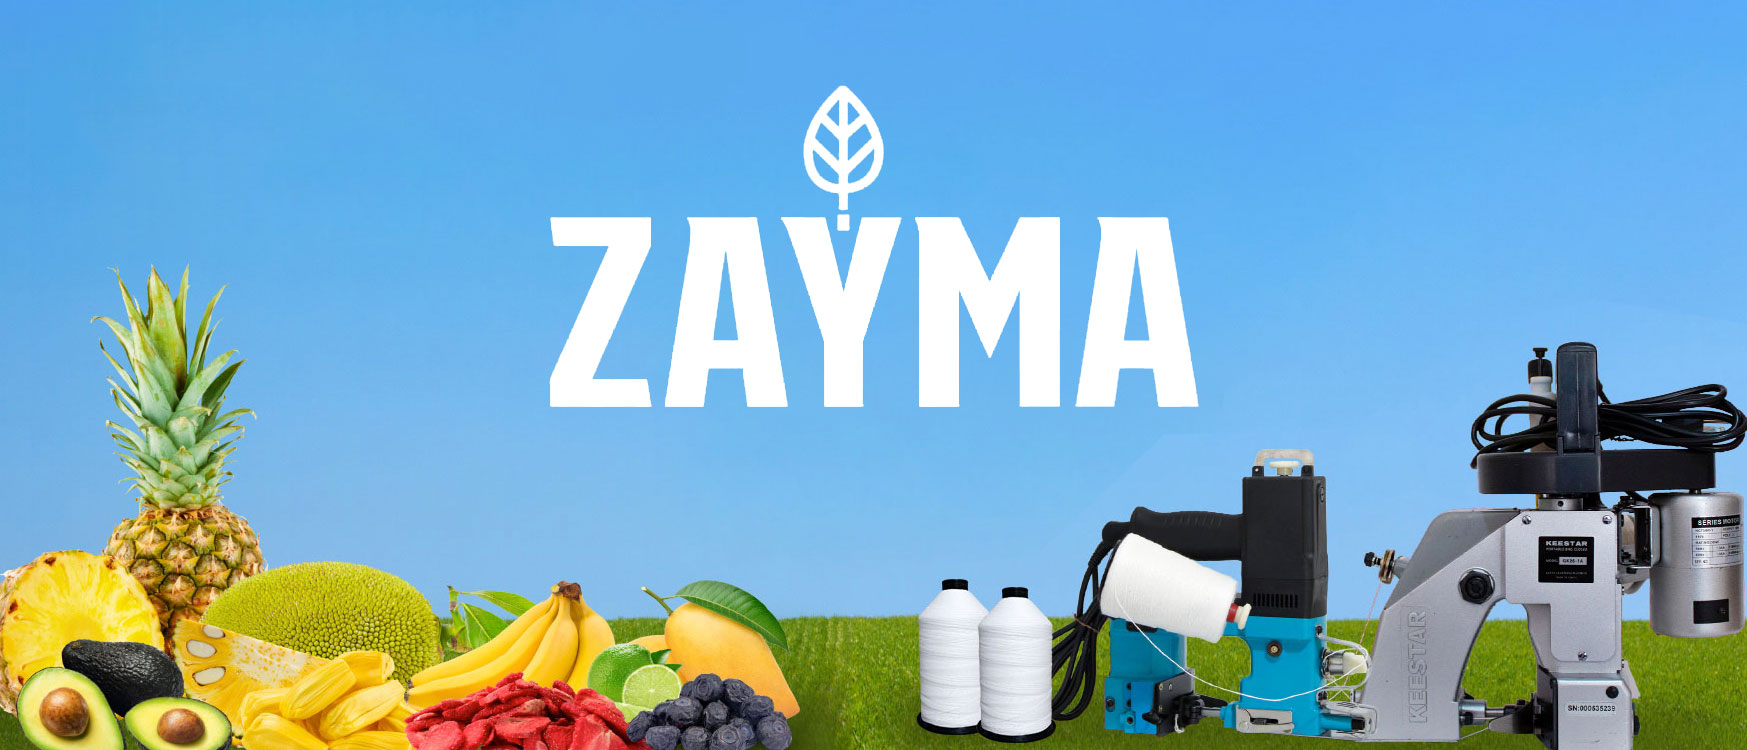 Zayma Inicio sitio web oficial para compra de productos agropecuarios y máquinas para coser costales